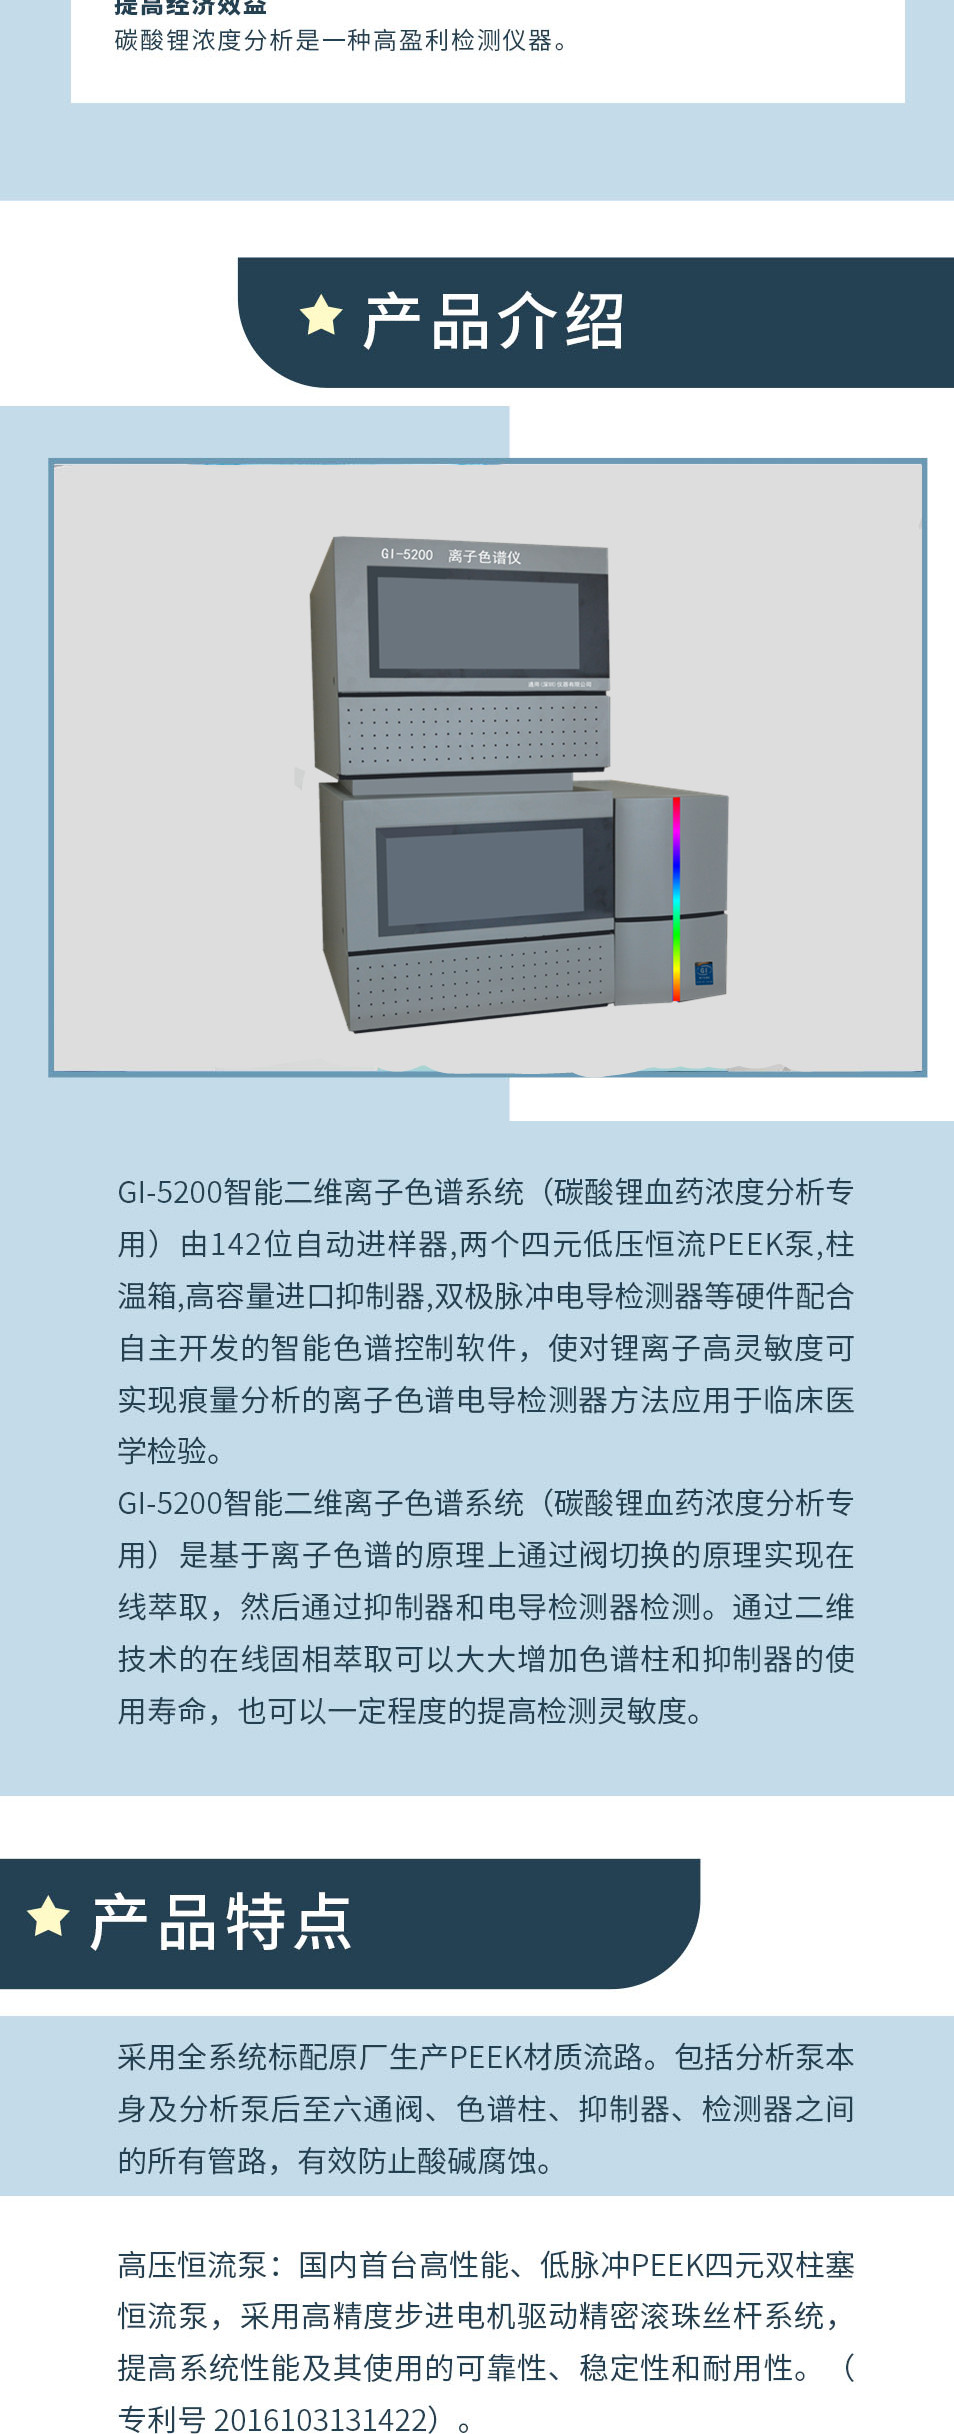 碳酸锂血药浓度分析仪GI-5200(图2)